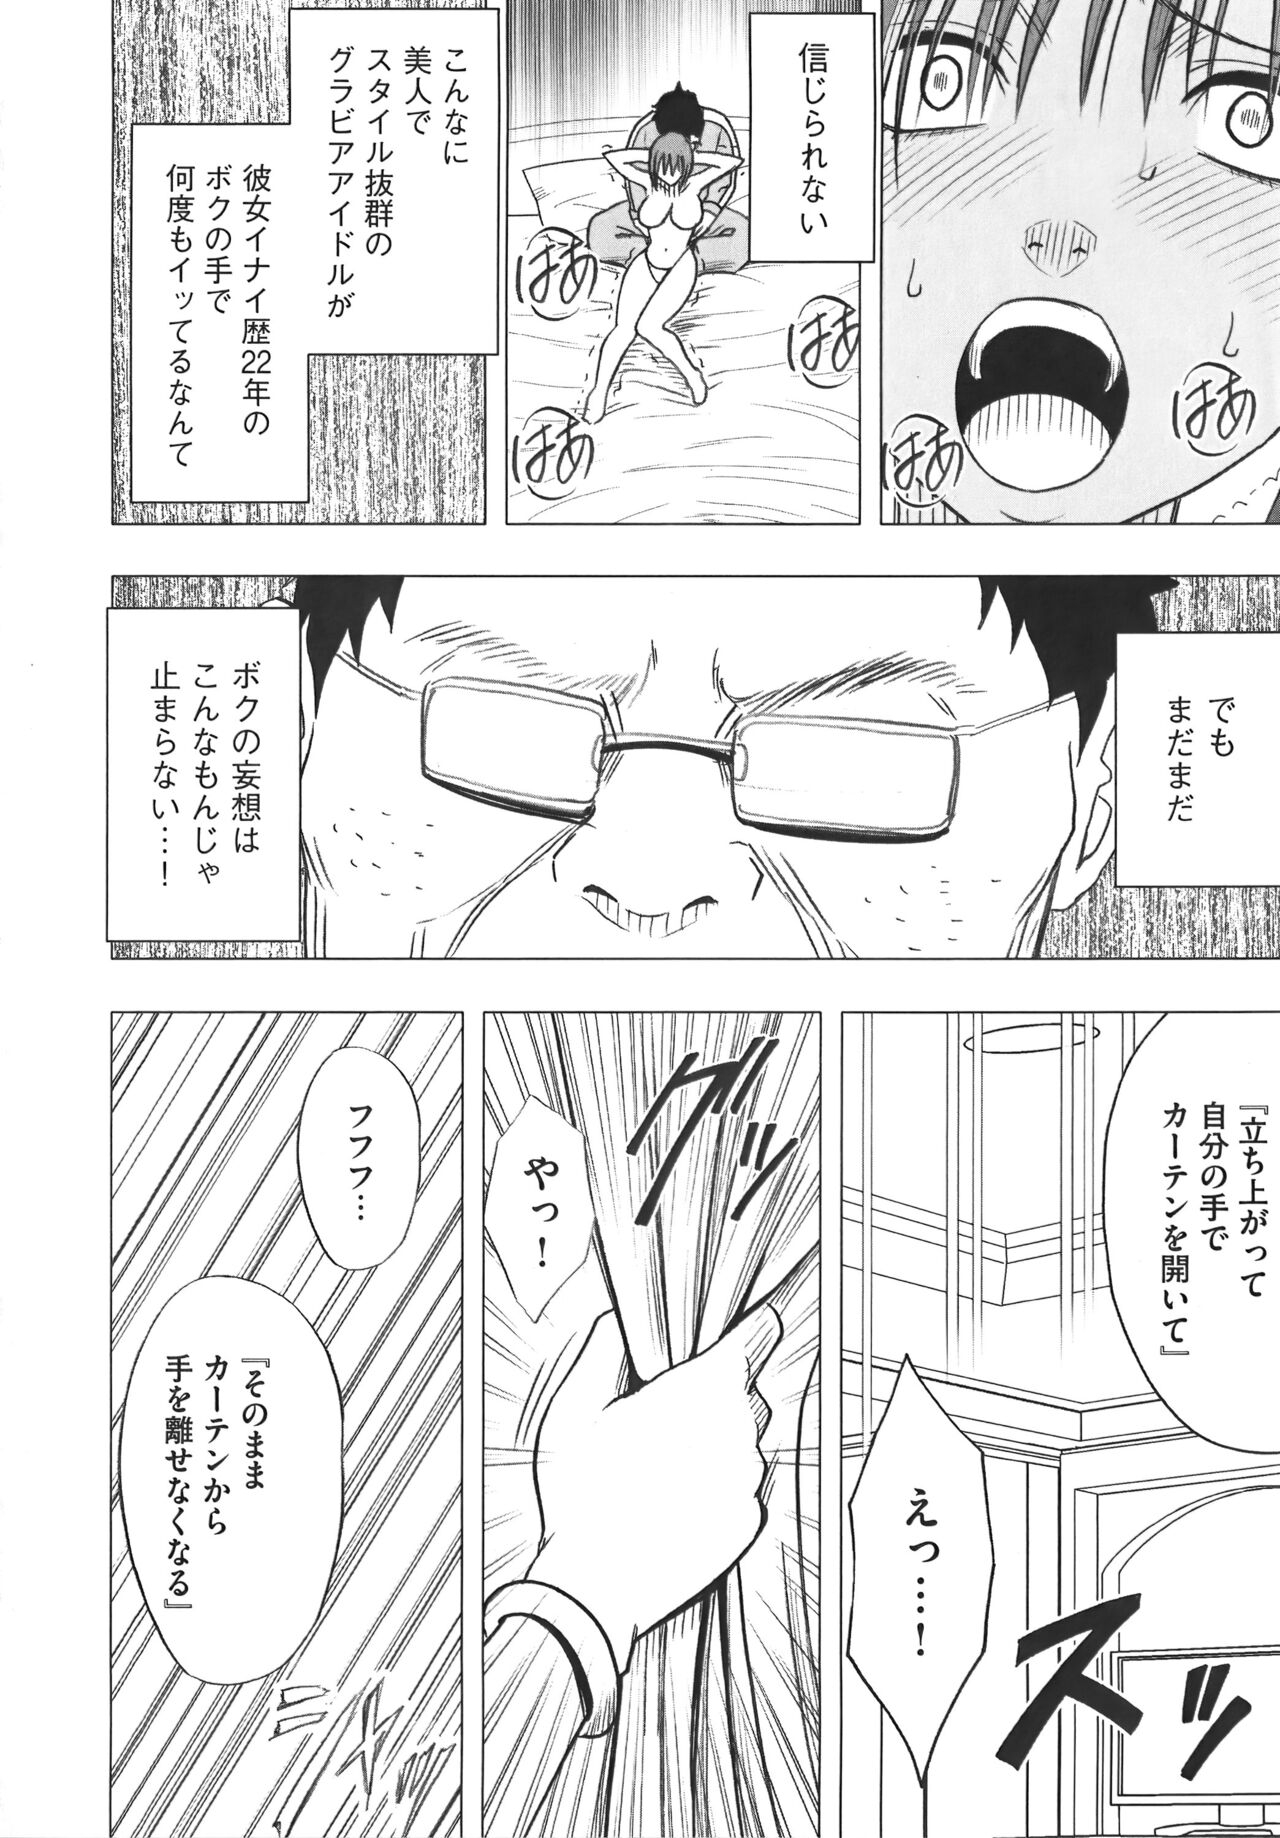 [Crimson] Idol Kyousei Sousa Vol.1 Smartphone de Meireishita Koto ga Genjitsu ni [Complete Edition] 55